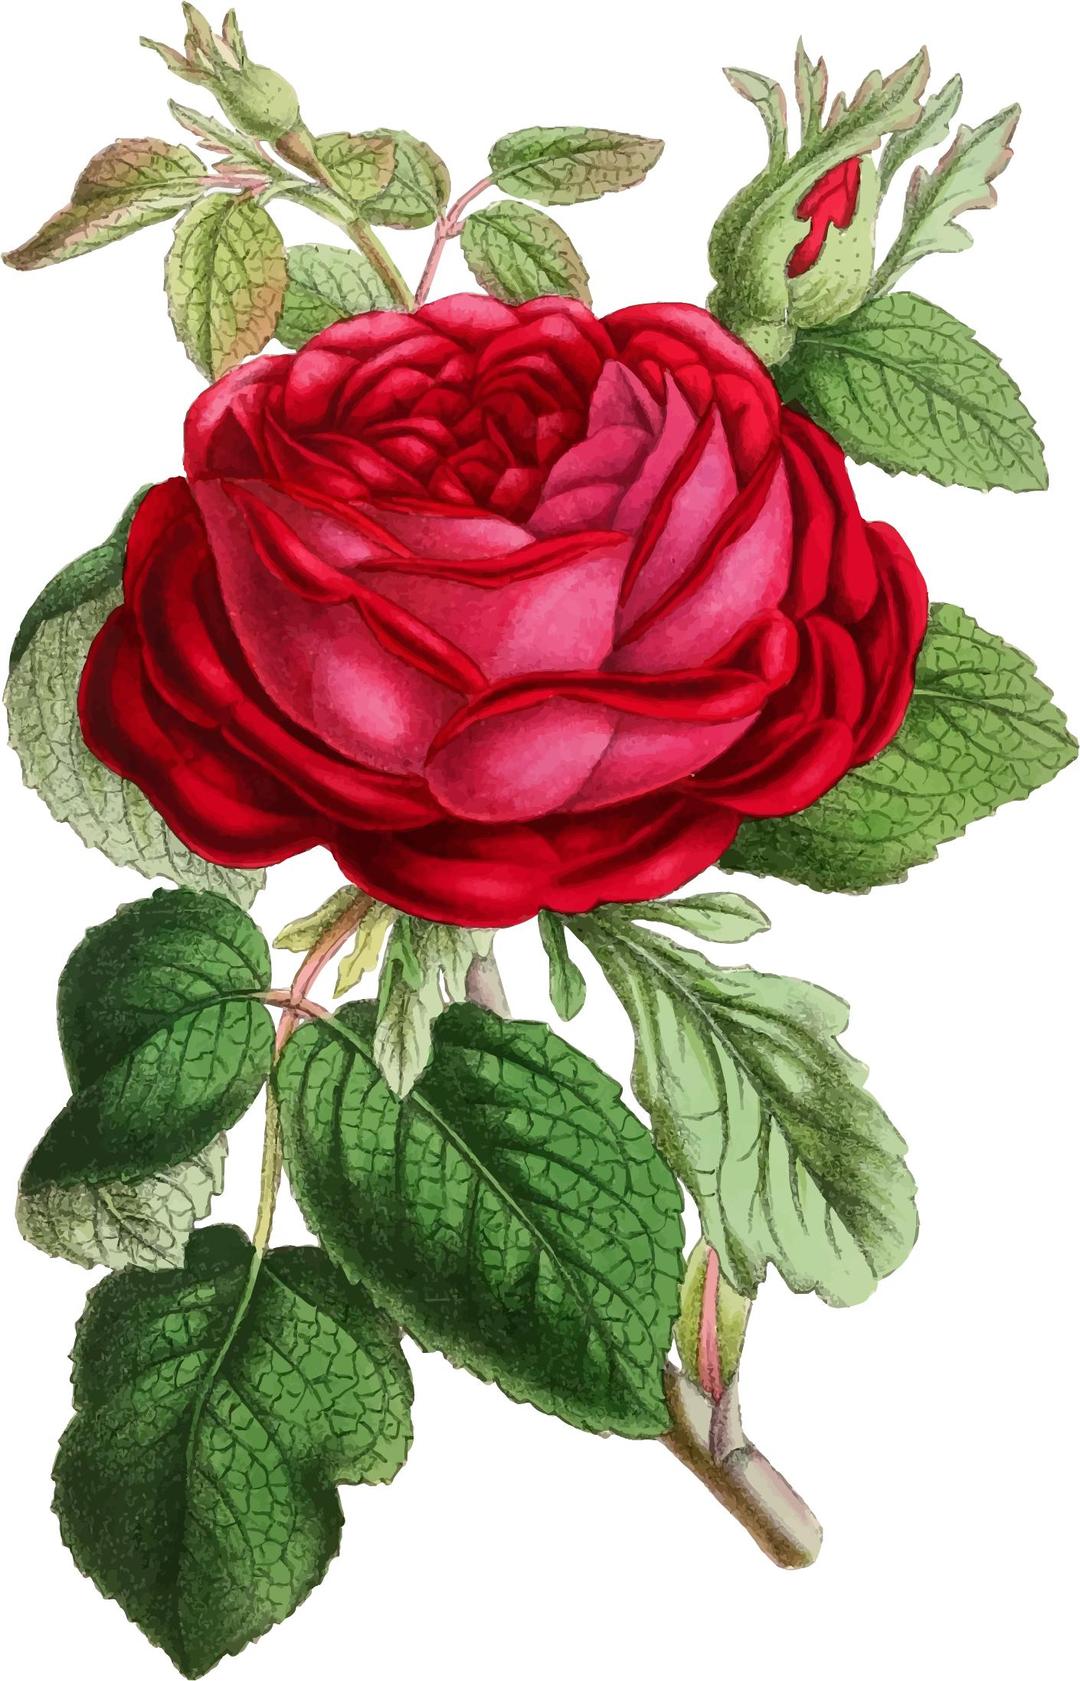 Vintage Rose Illustration png transparent